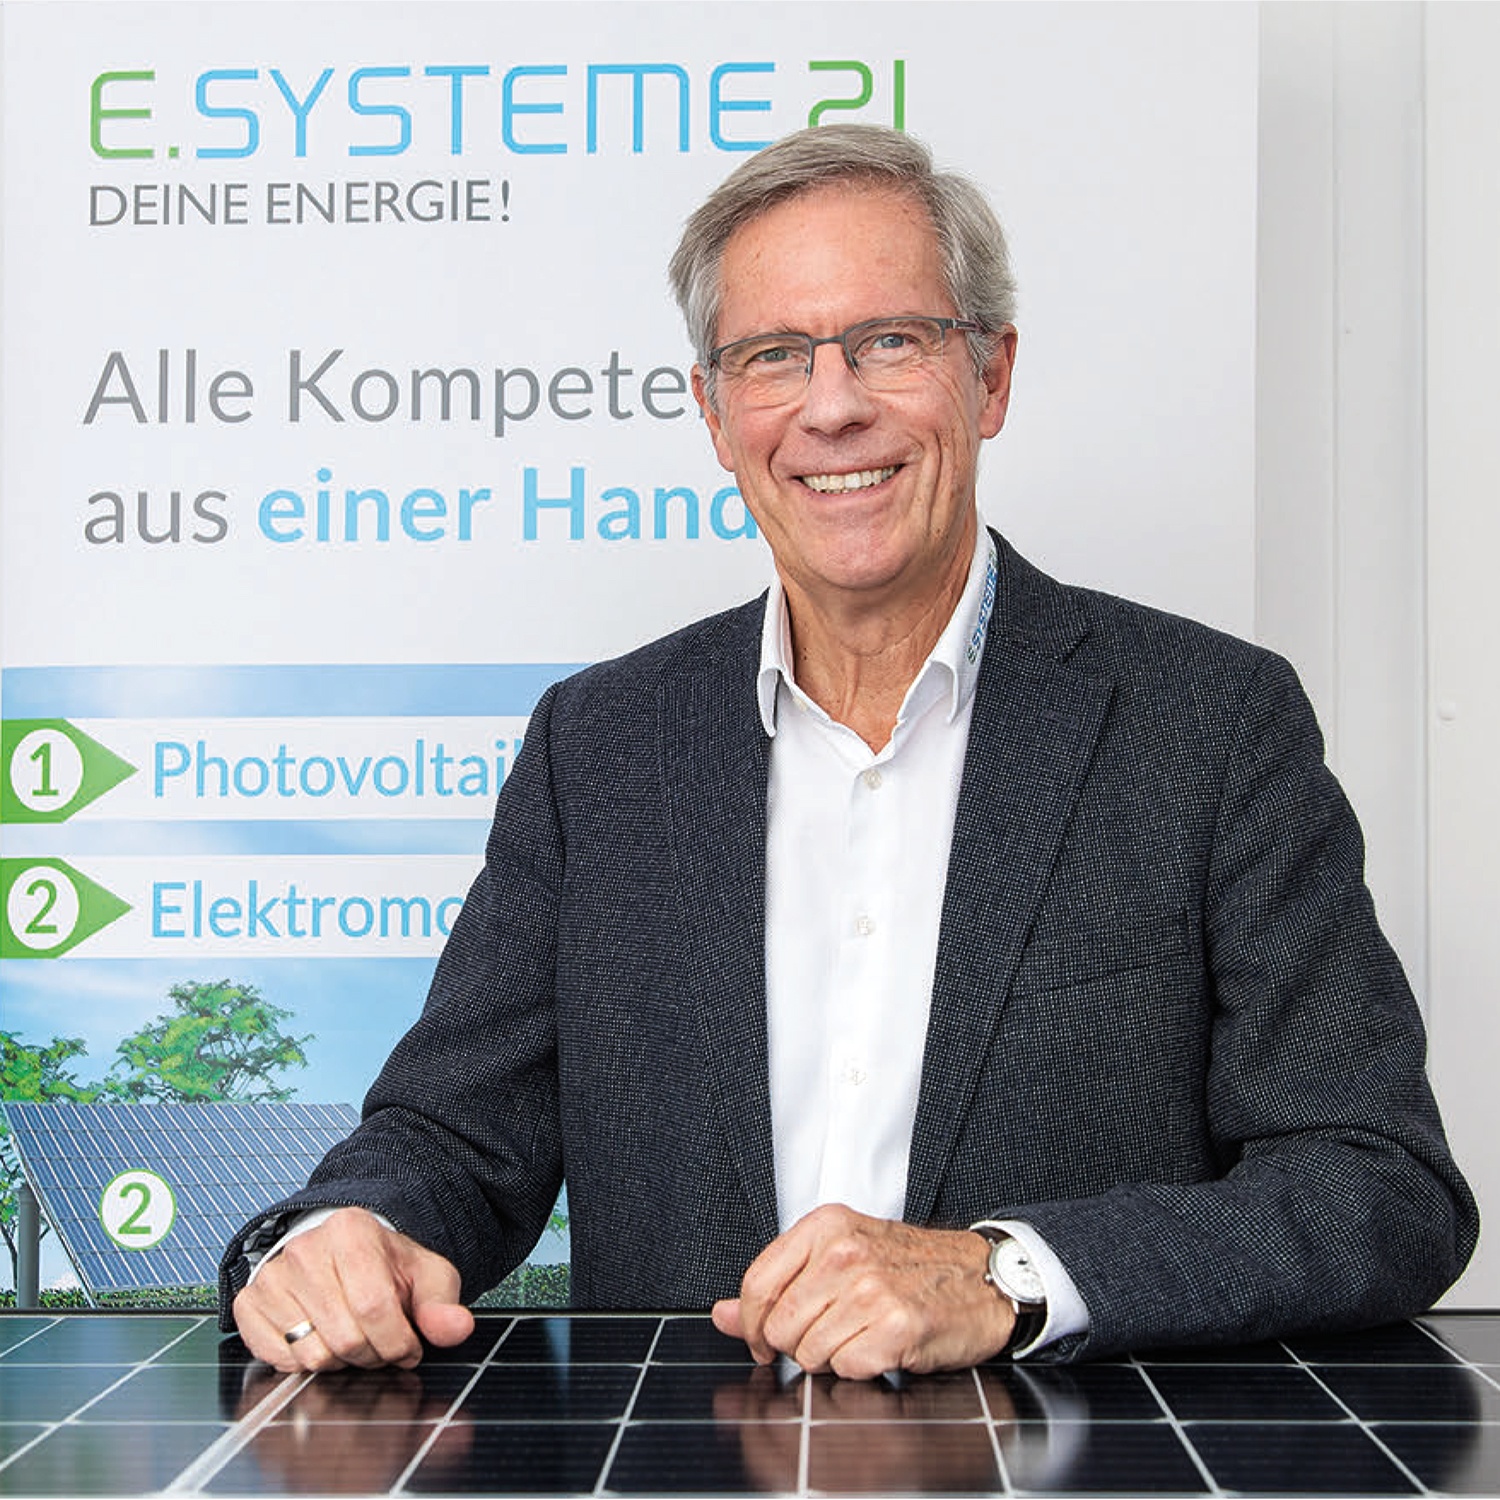 Norbert Unterharnscheidt, Geschäftsführer von e.systeme21, dargestellt mit Photovoltaikmodul